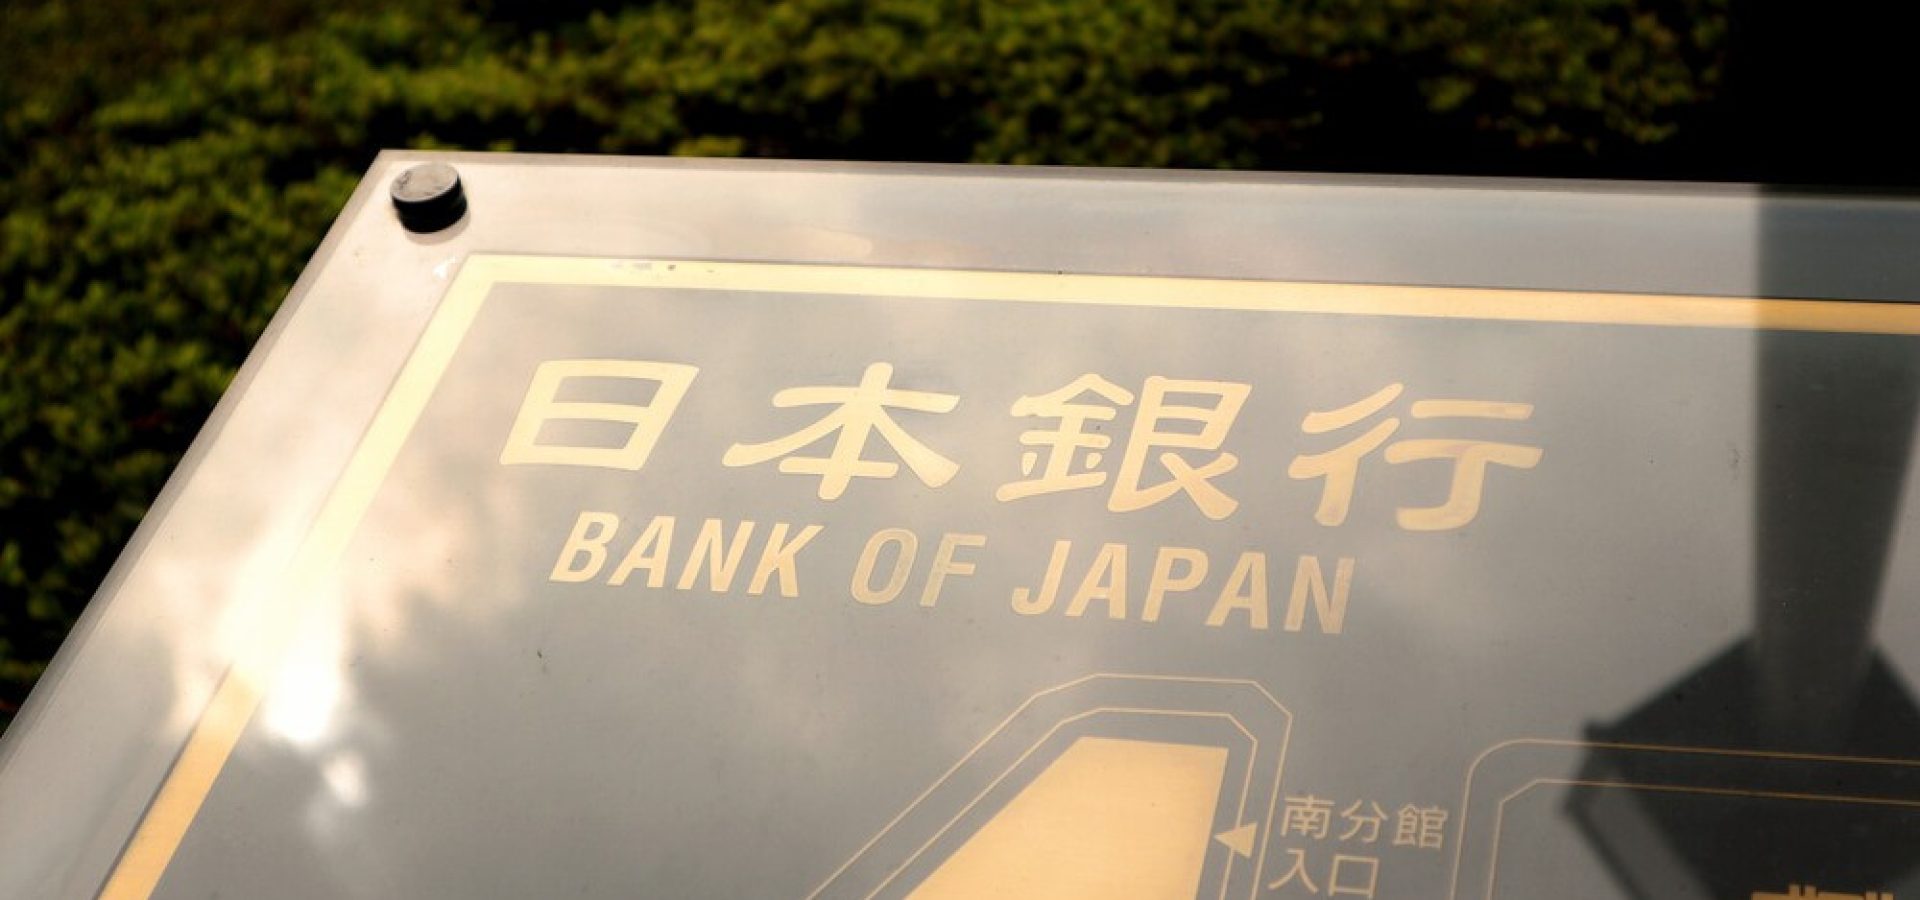 Bank of Japan and CBDC